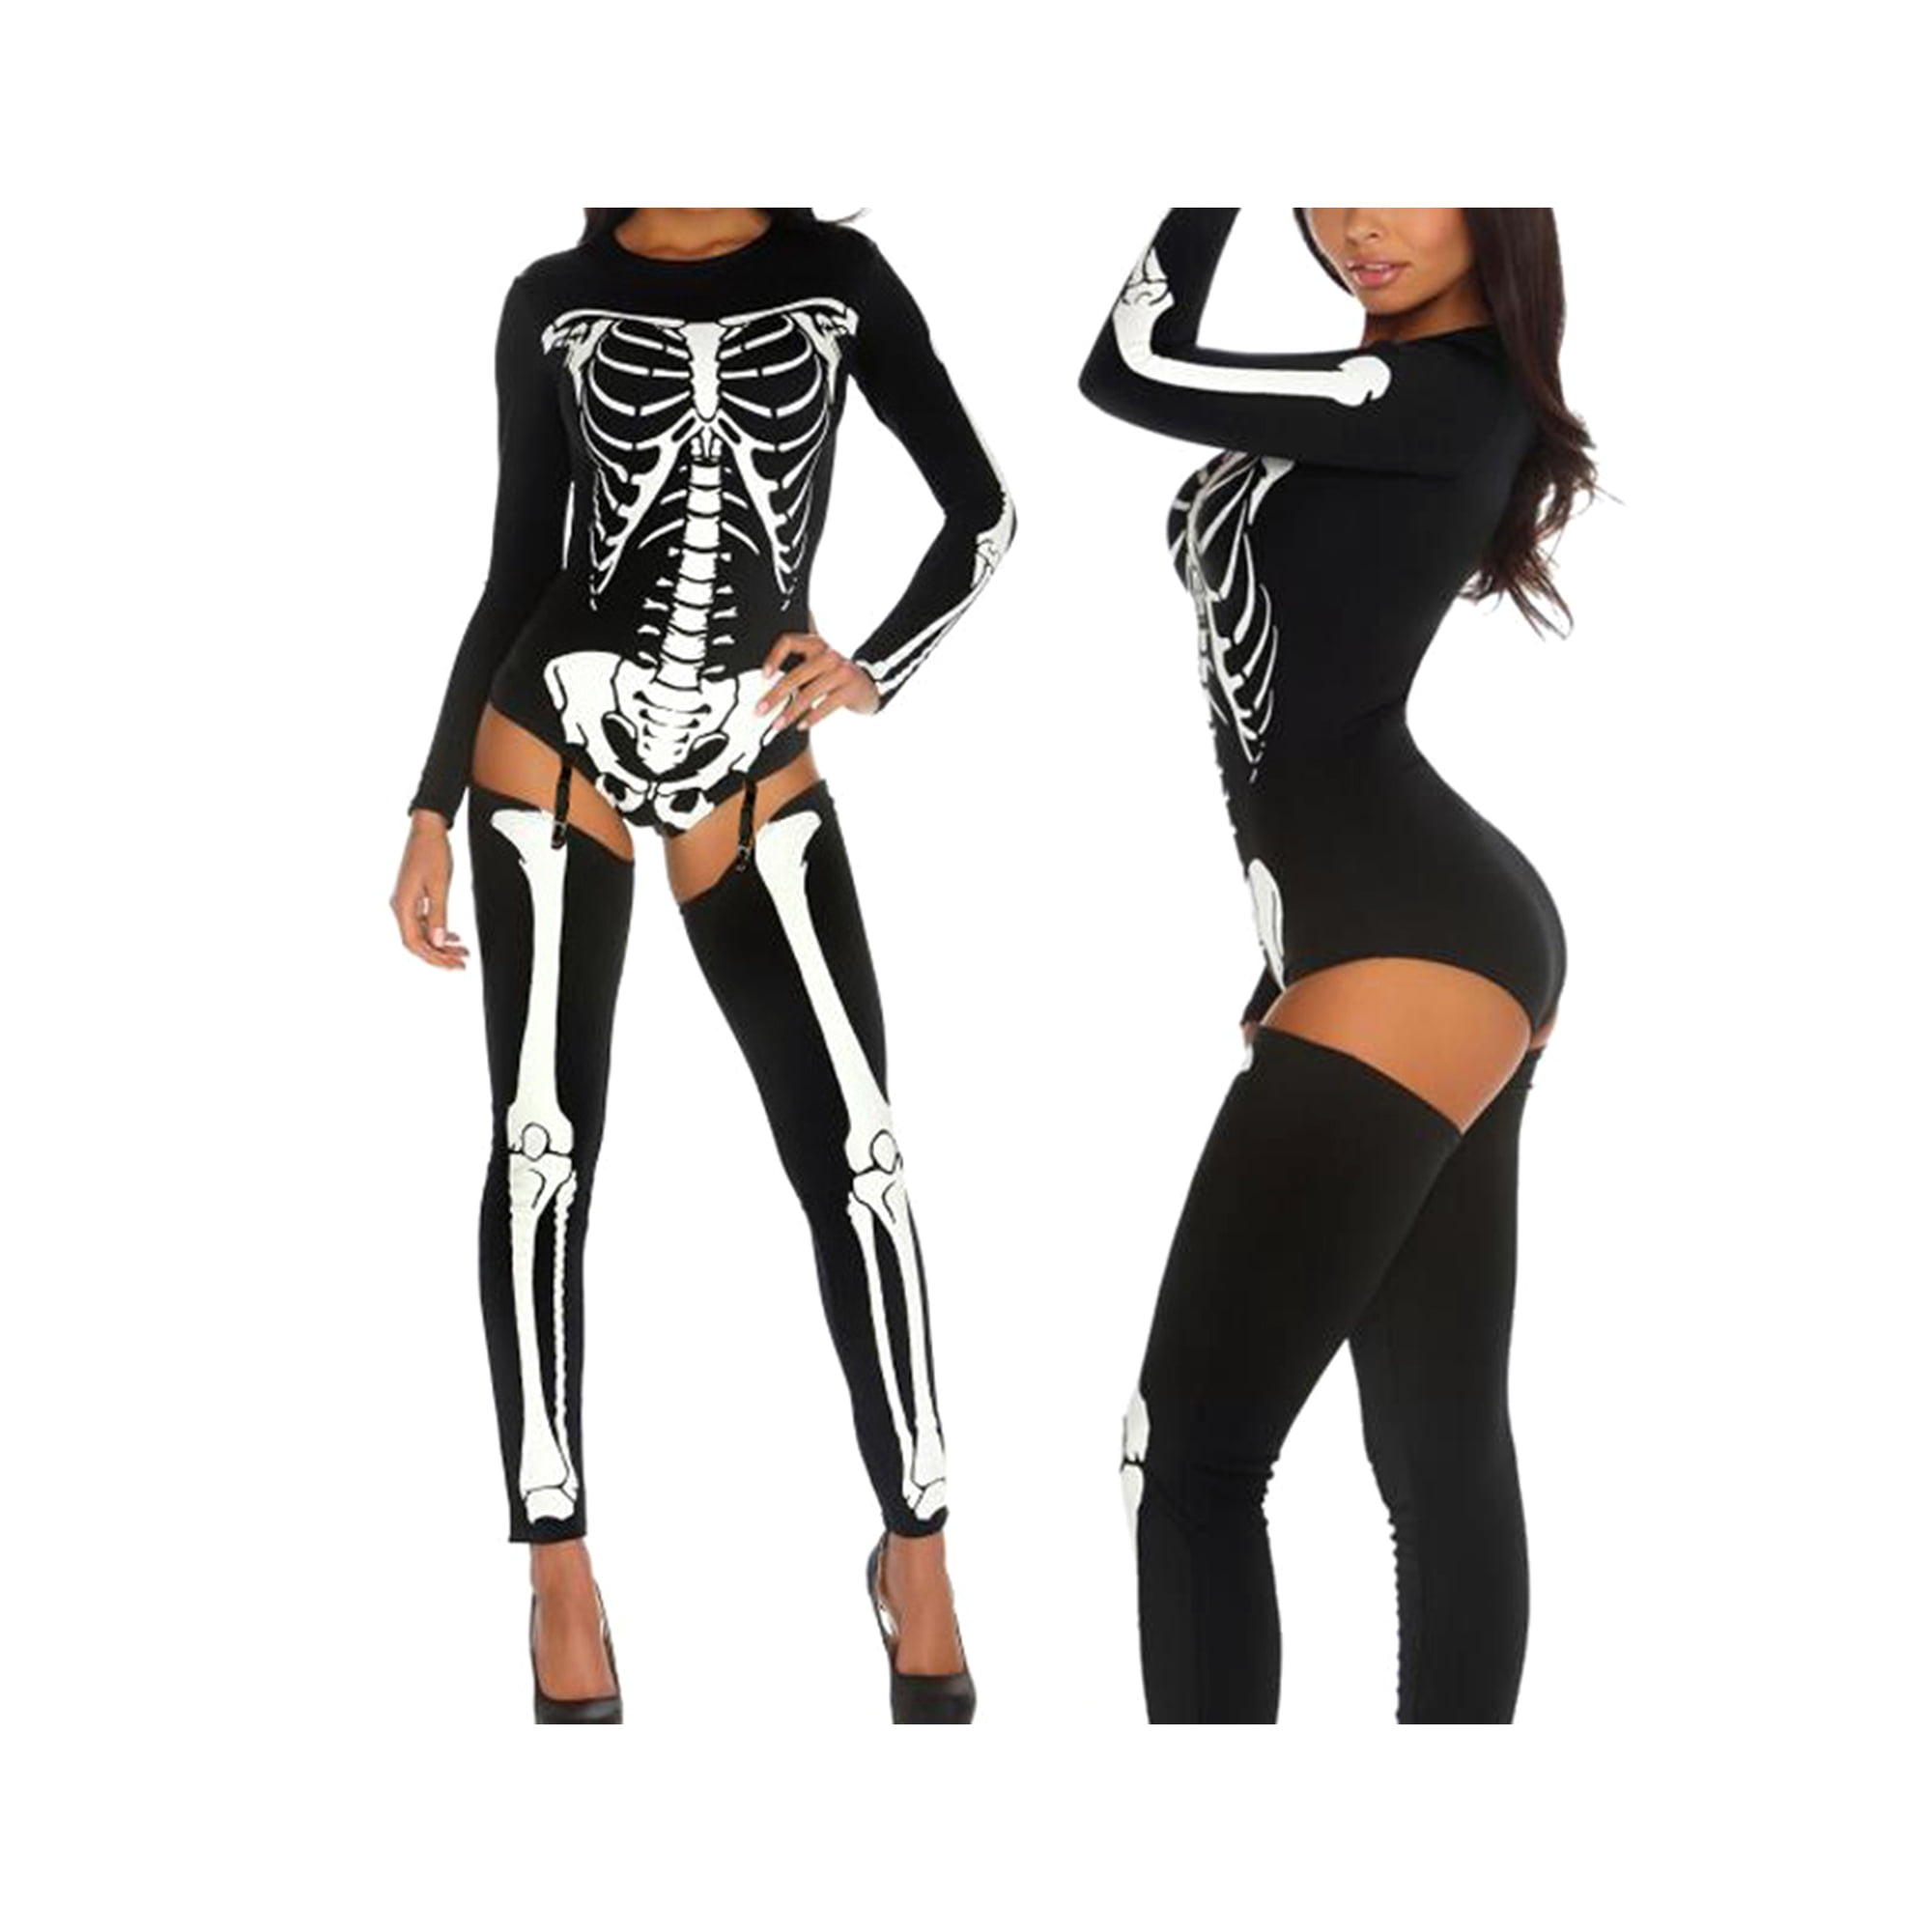 Body de esqueleto, traje de esqueleto para mujer, disfraces para mujer,  disfraz de Halloween, disfraces de Halloween para mujer, catsuit de  esqueleto, disfraz de miedo -  México